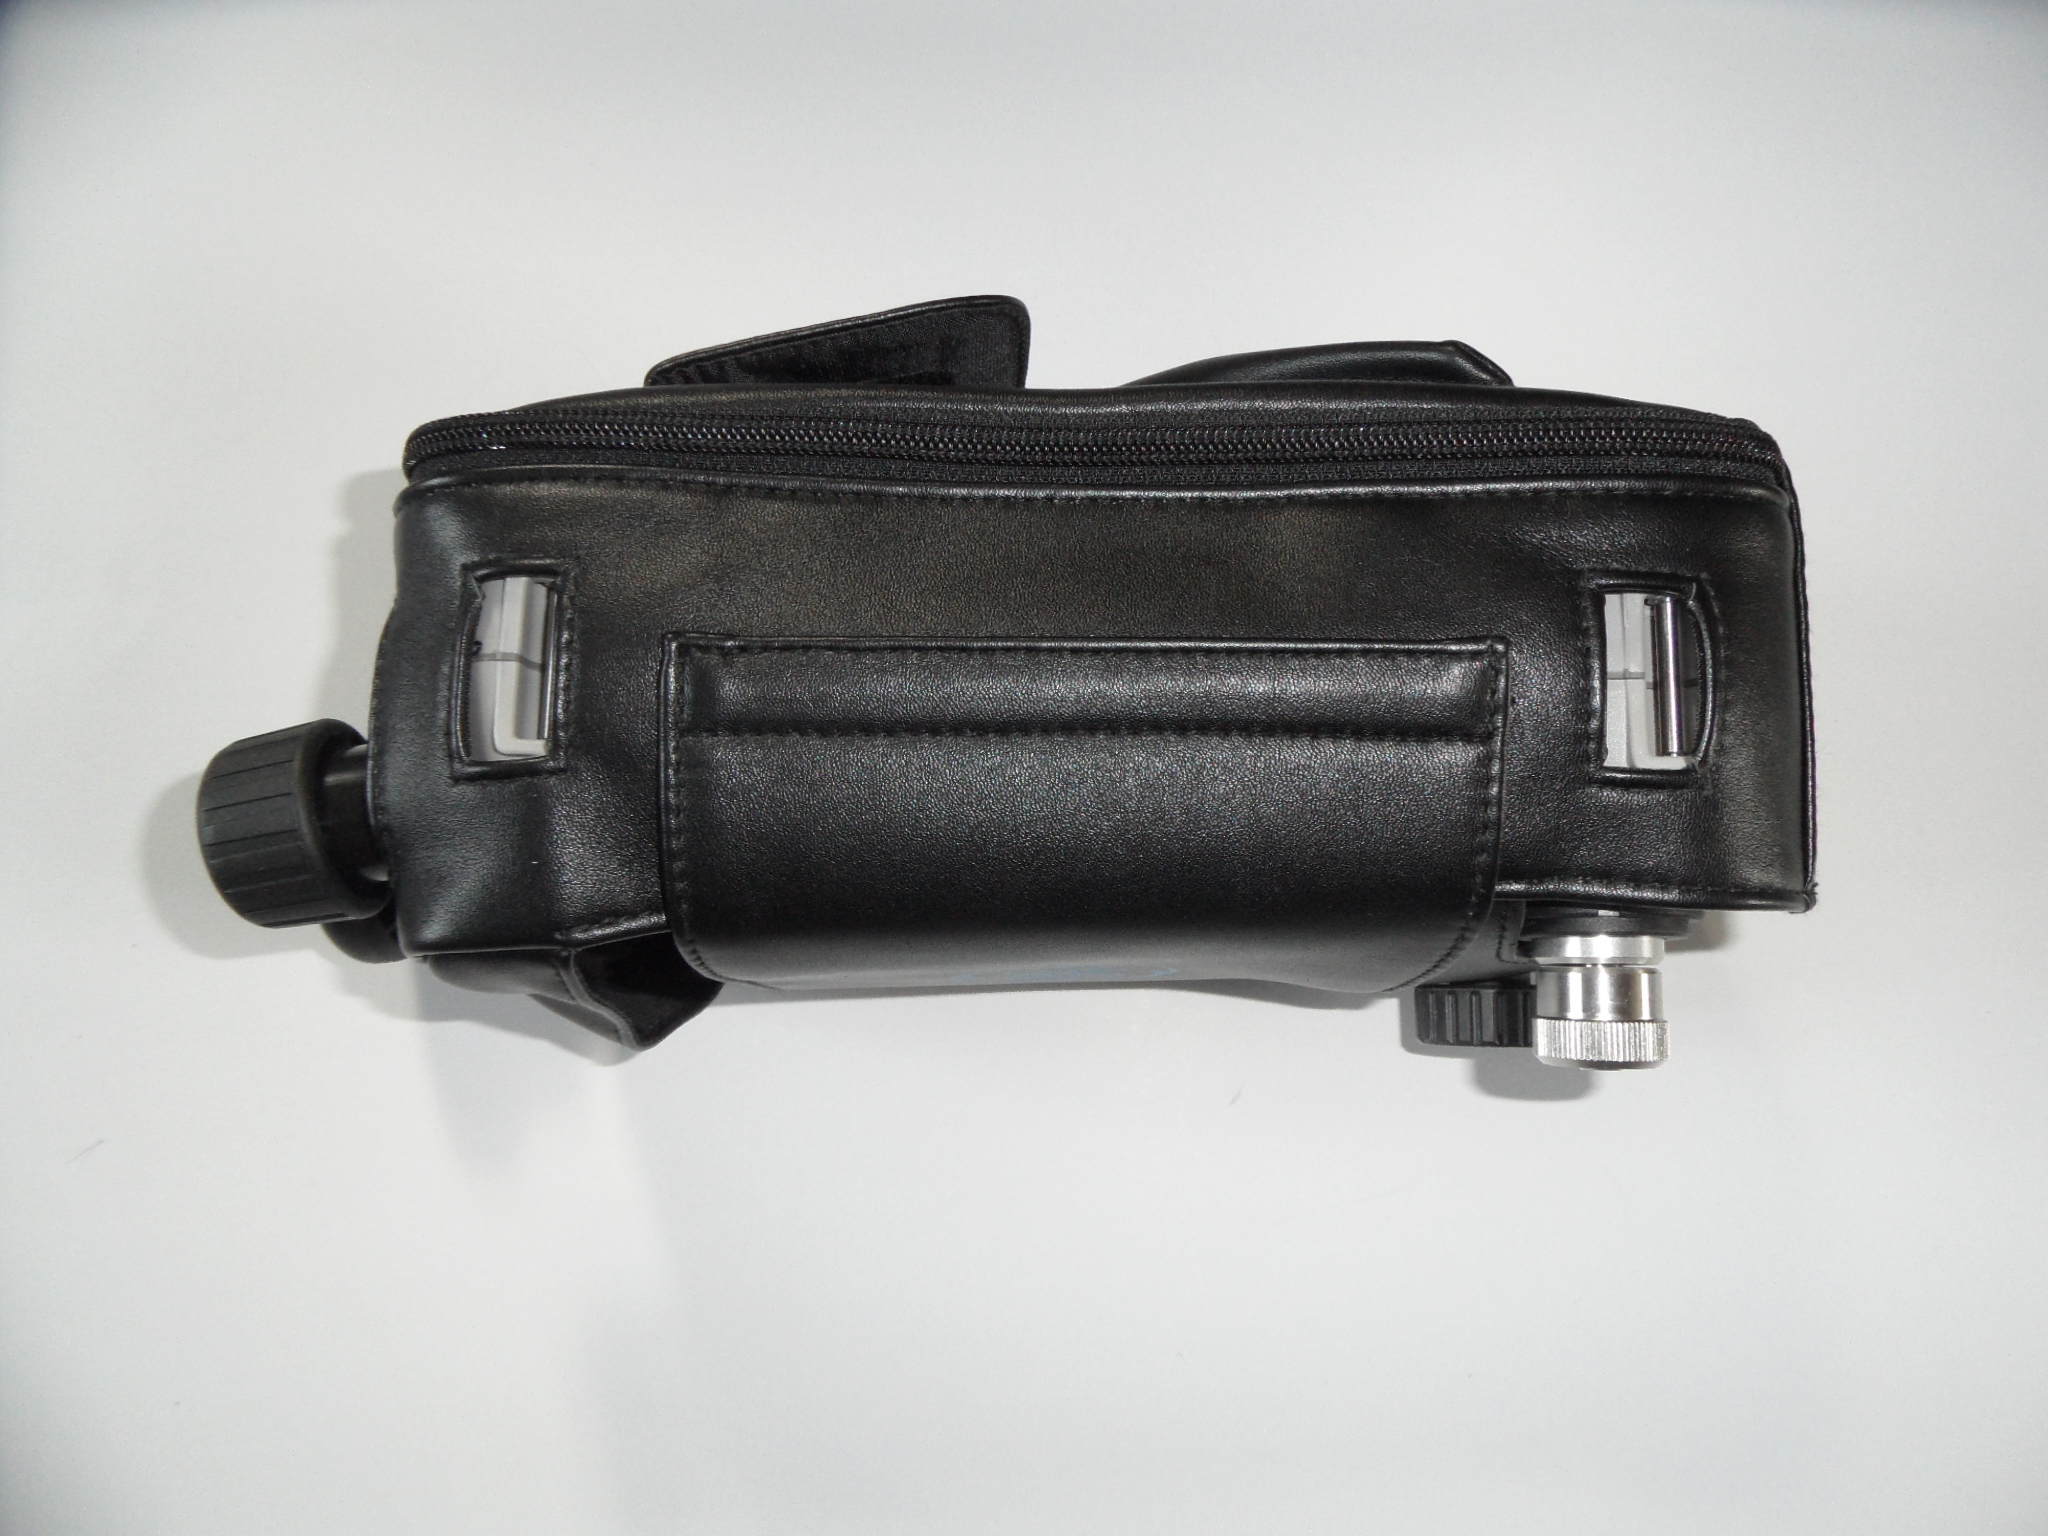 PS机袋 探测仪包 笔袋 测量仪包 笔包 遥控器包 PS机包1